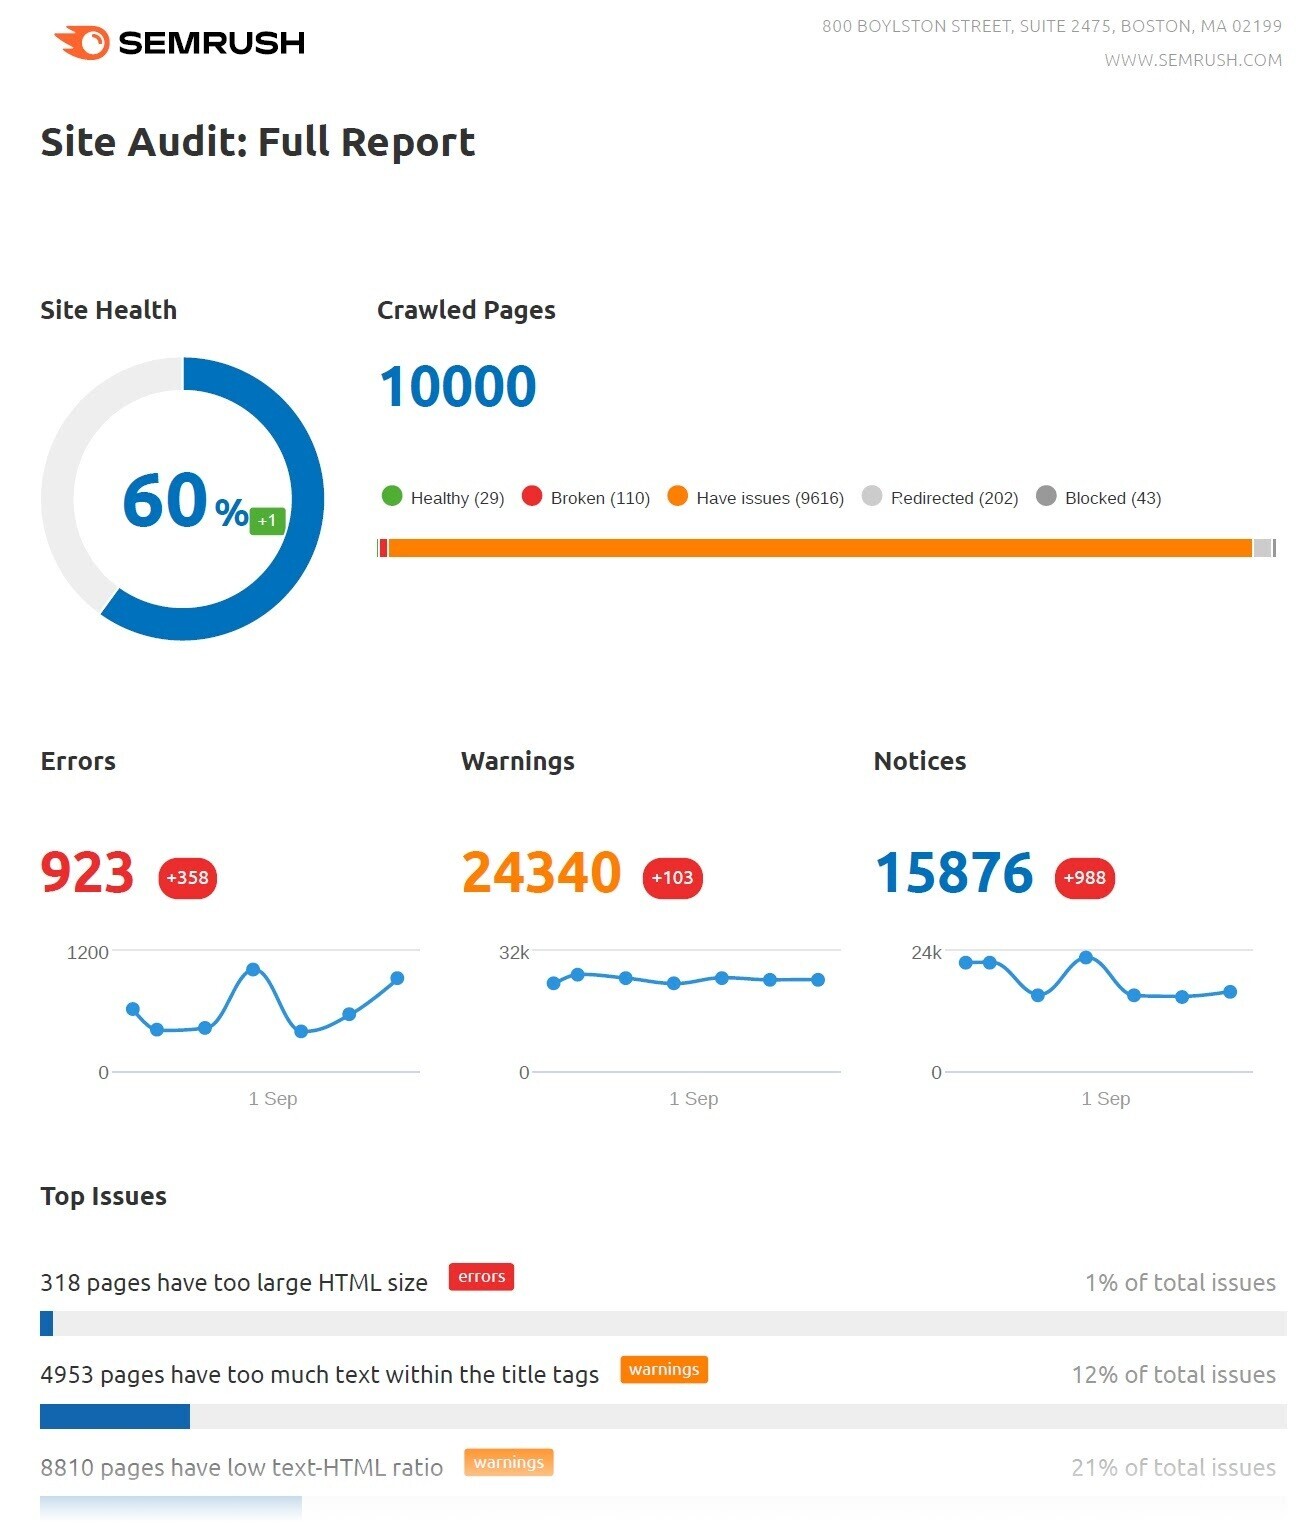 "Site Audit: Full Report"